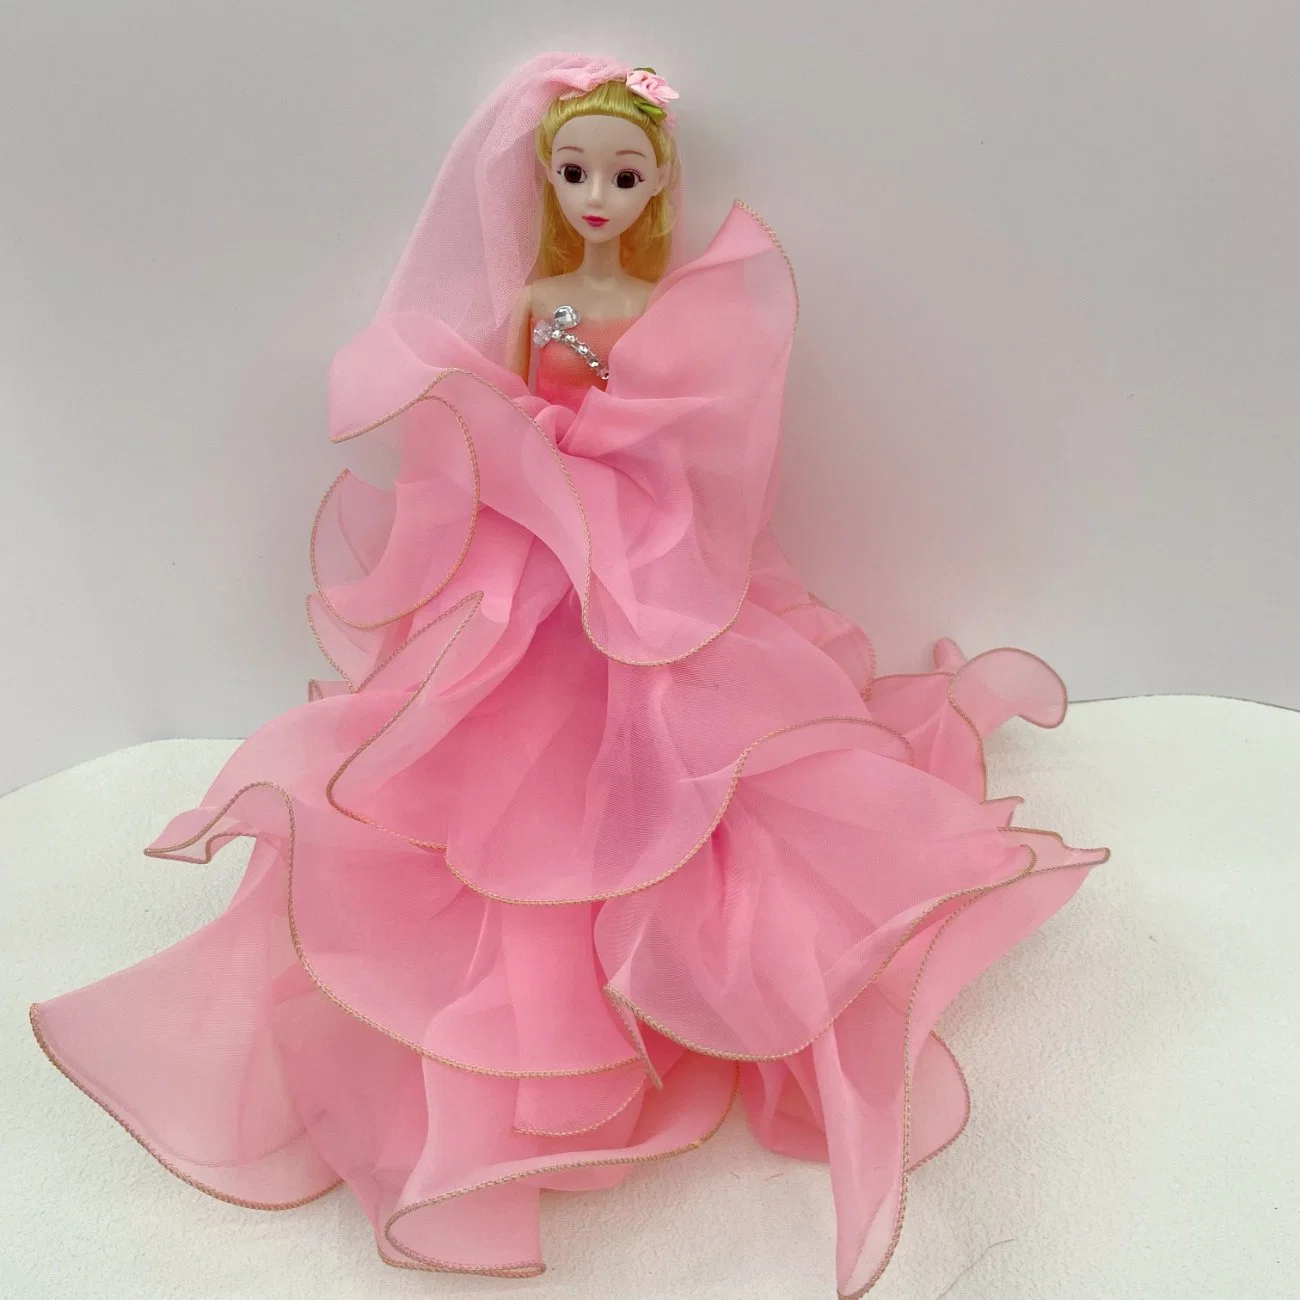 Boneca Barbie Princesa Princesa Princesa ou Barbie Veste os acessórios de vestuário Princessmusic e cantar